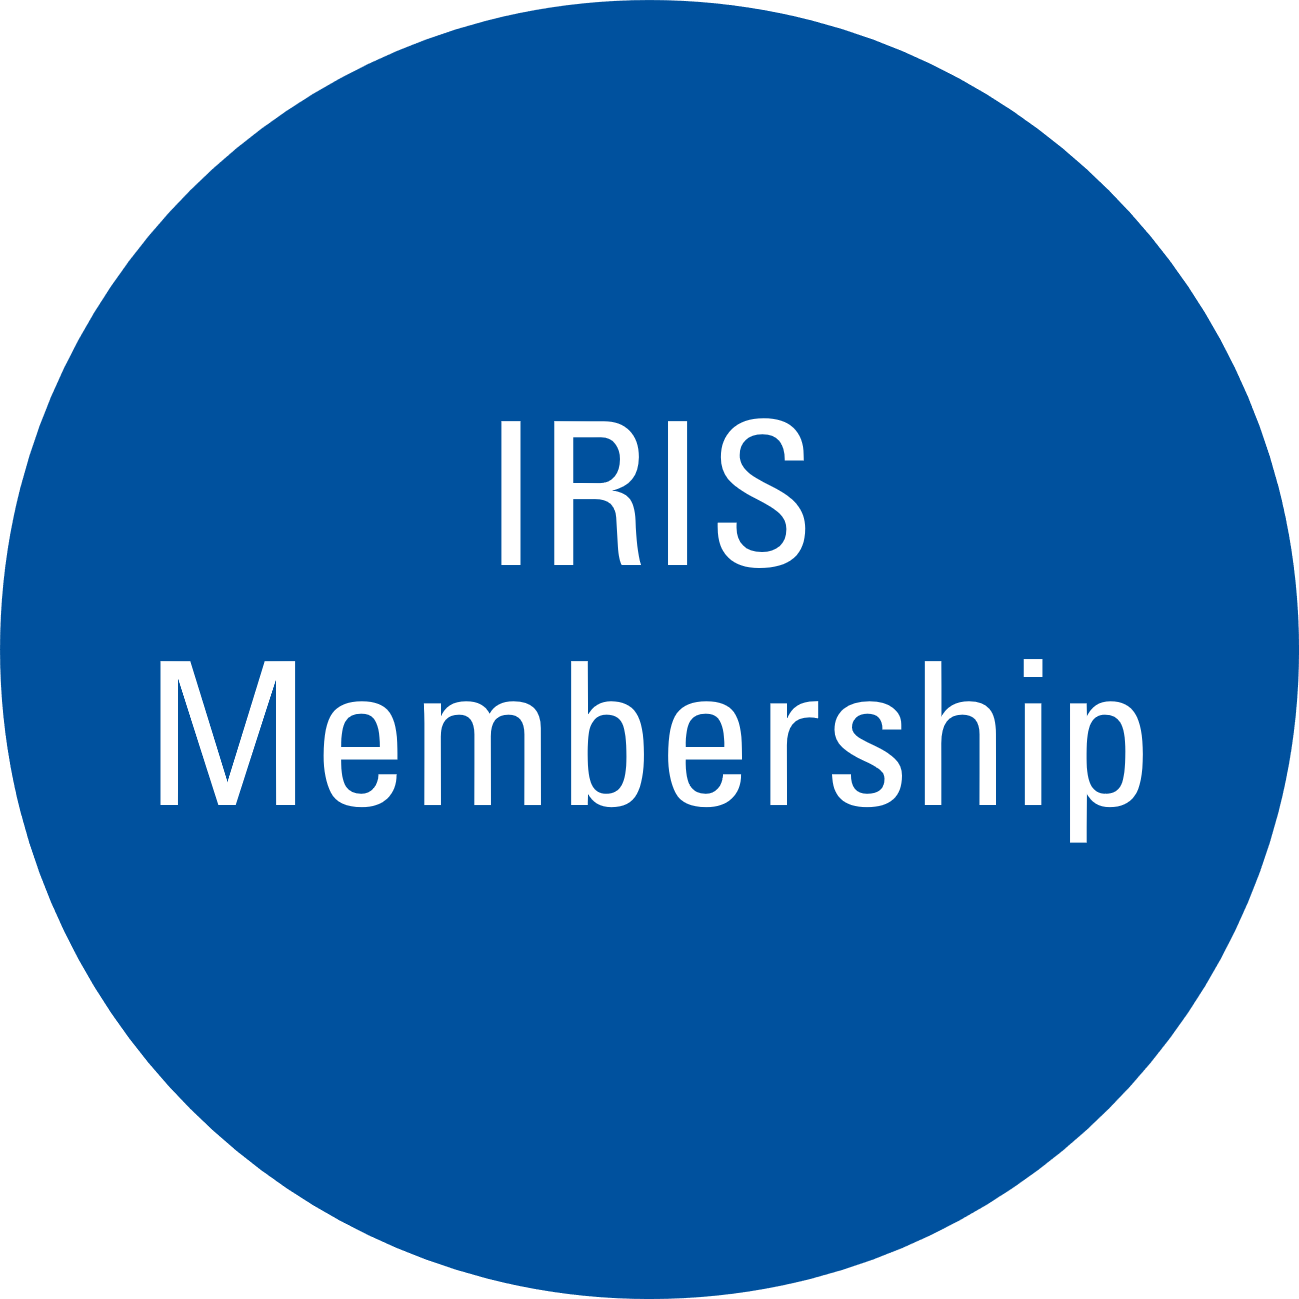 Blue circe with text "IRIS Membership"